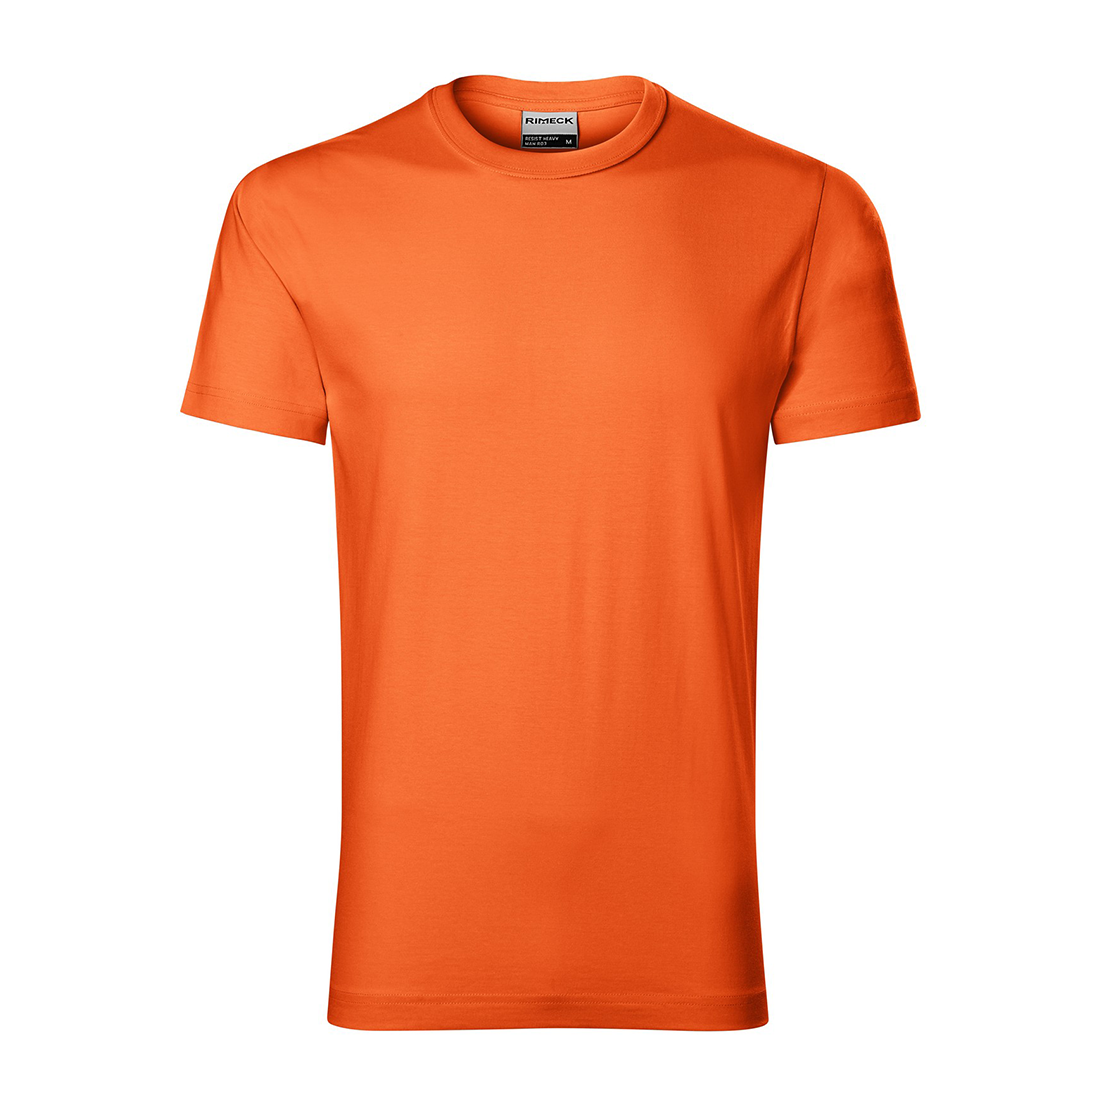 Herren-T-Shirt aus vorgewaschener Baumwolle - Arbeitskleidung